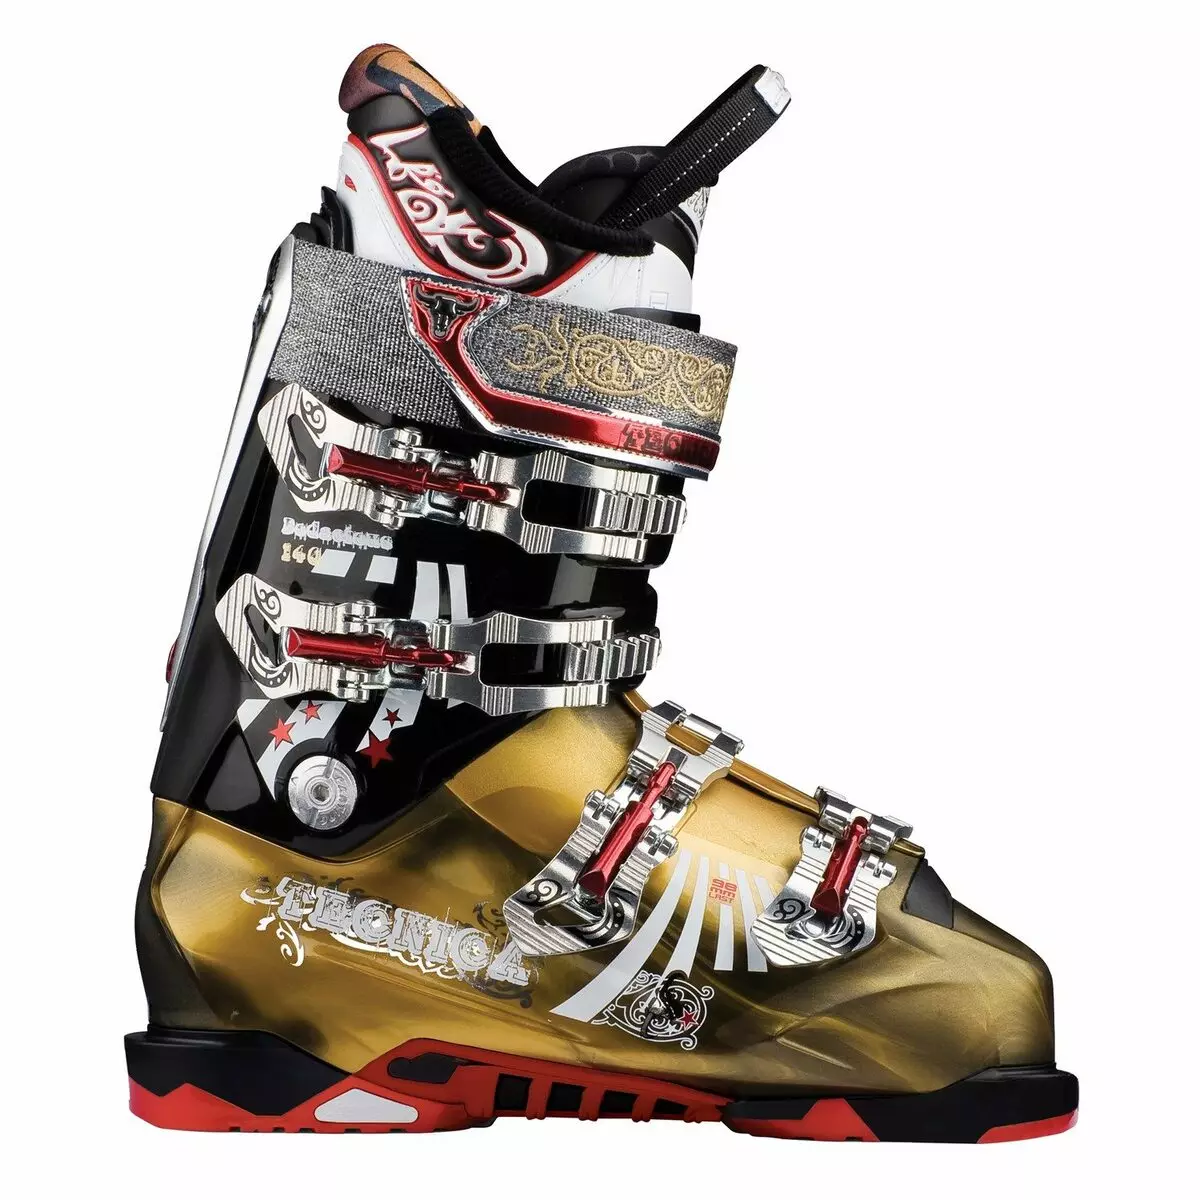 Tecnica Kayak Bootları (29 Resimler): Dağ Kayak Havası Kayak Hava Kabuğu, Phoenix, Ejderhaneler için Çocuk ve Kadın Modelleri 15109_23